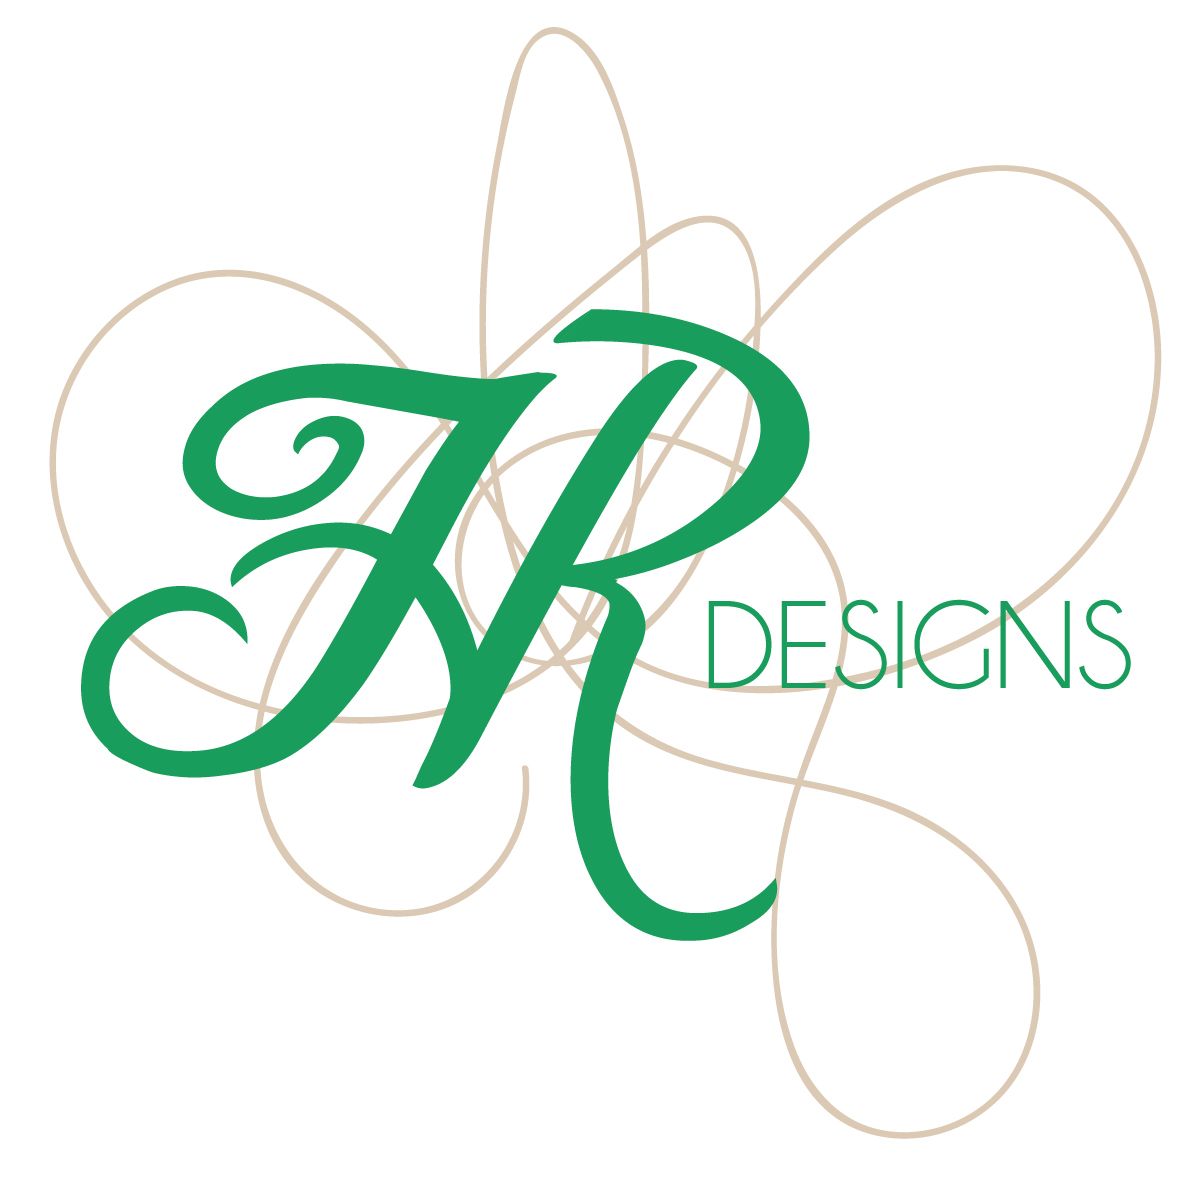 Hebdon Reblin Designs